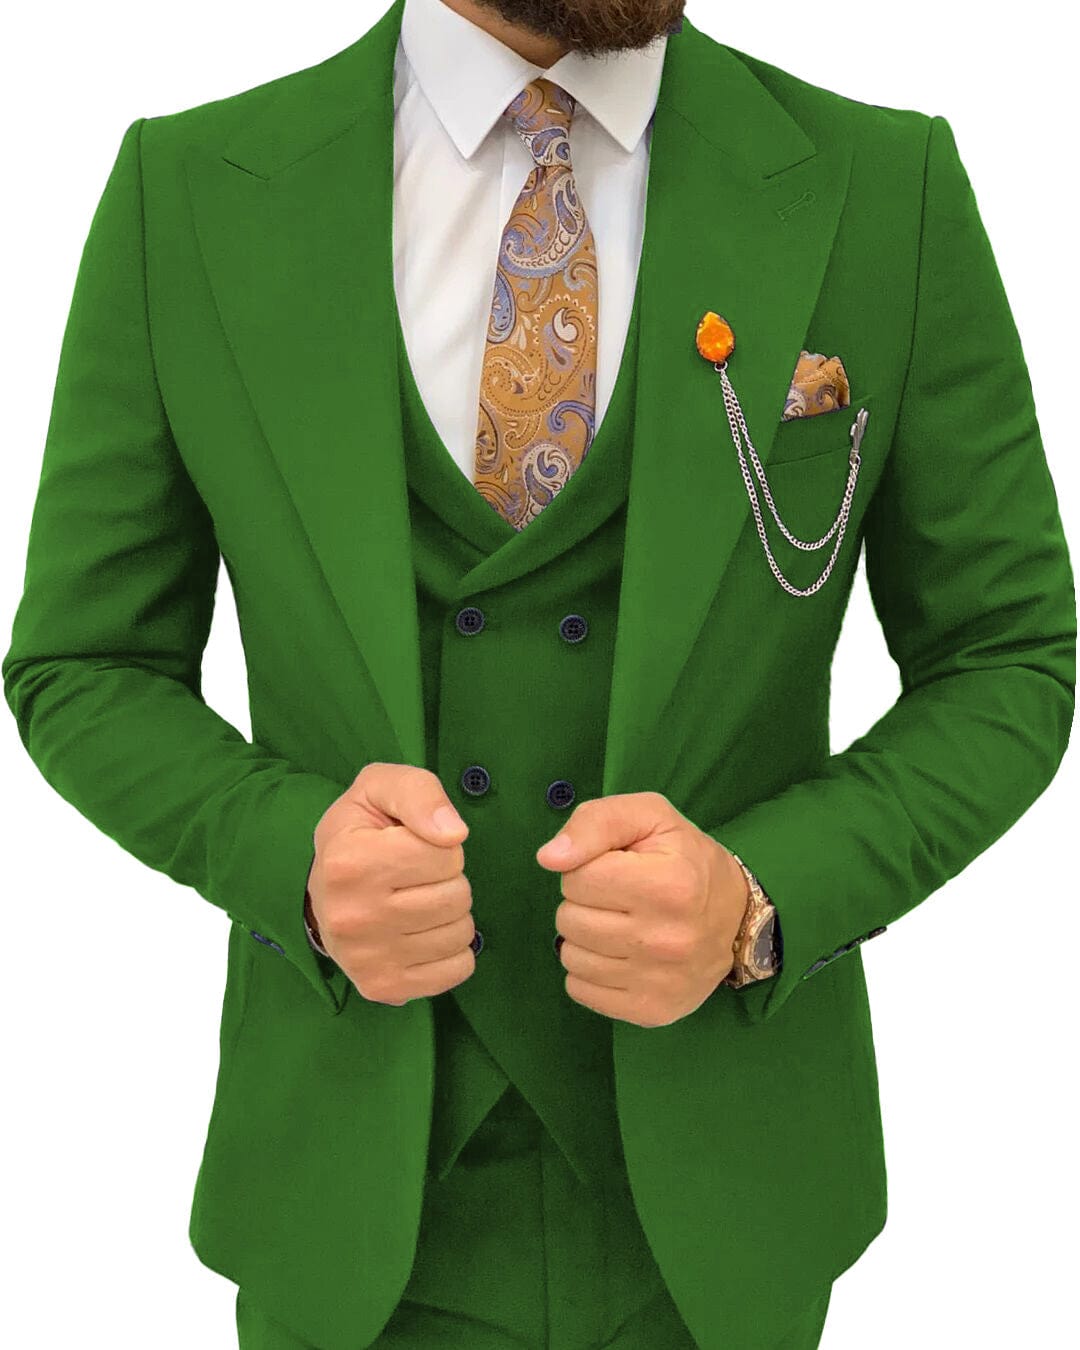 ceehuteey Men’s Suits Slim Fit 3 Piece Suit Formal Wedding Groosmen Suits Prom Tuxedo Suits (Blazer+vest+Pants)